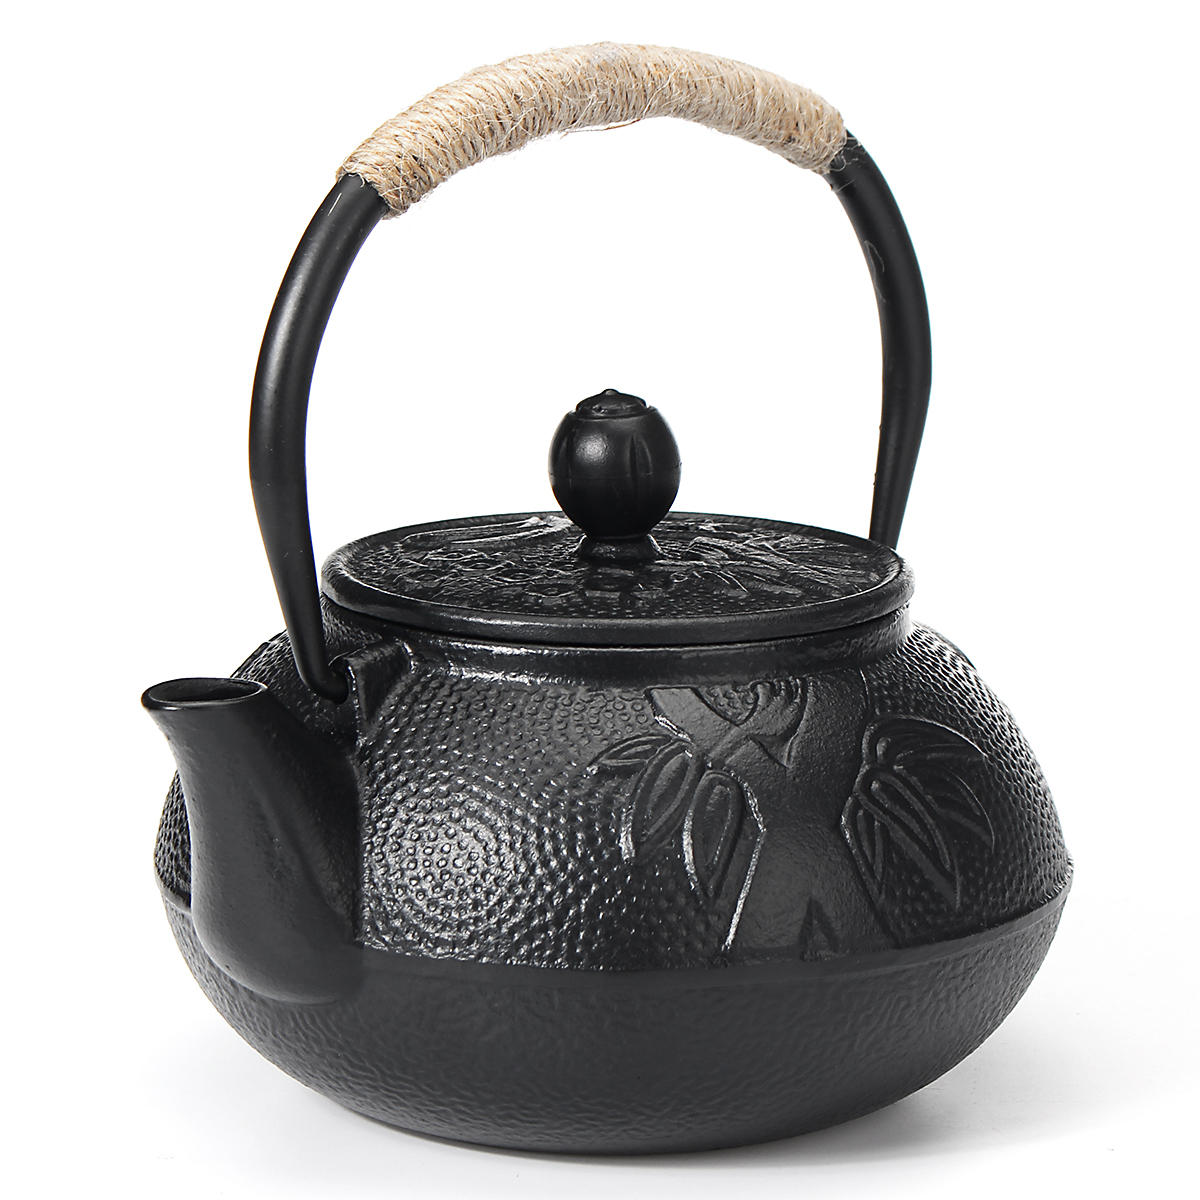 

Чугунный чайник Tetsubin Чайник поставляется в японском стиле